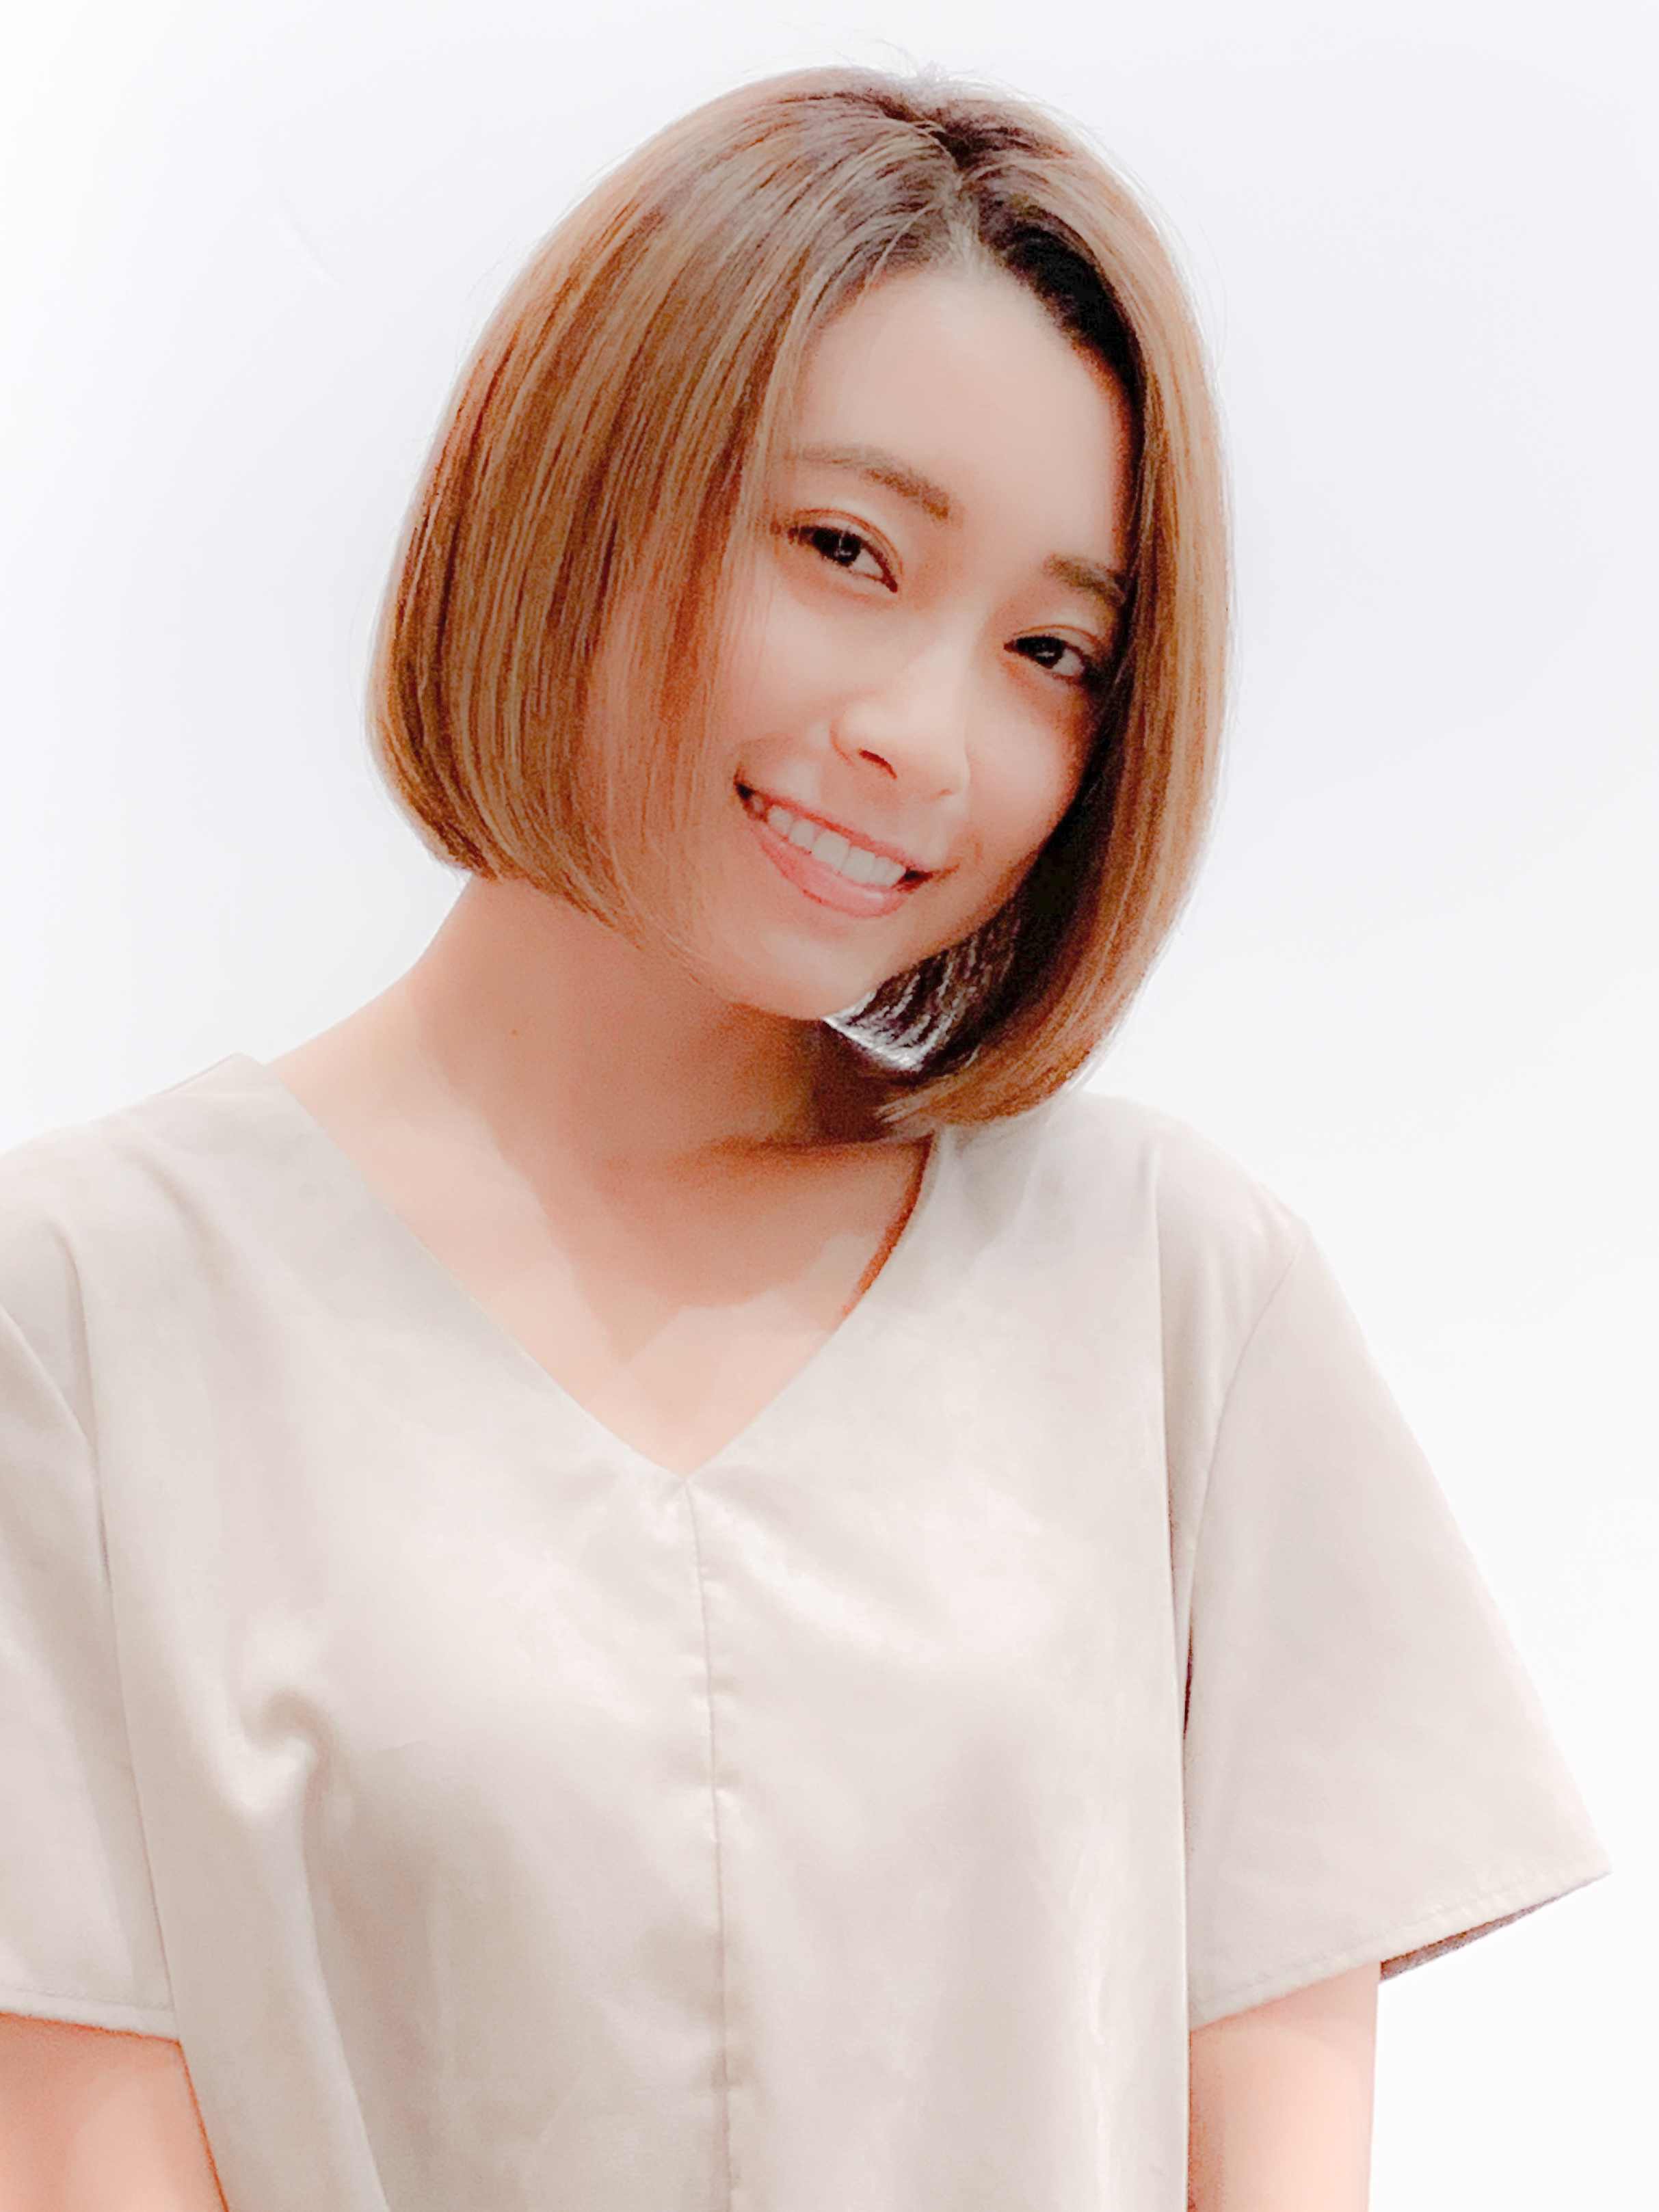 丸顔さんに似合う前髪 おすすめの前髪あり なしの髪型を解説 似合わせカットが上手い東京の美容師 美容室minx銀座 蛭田のブログ